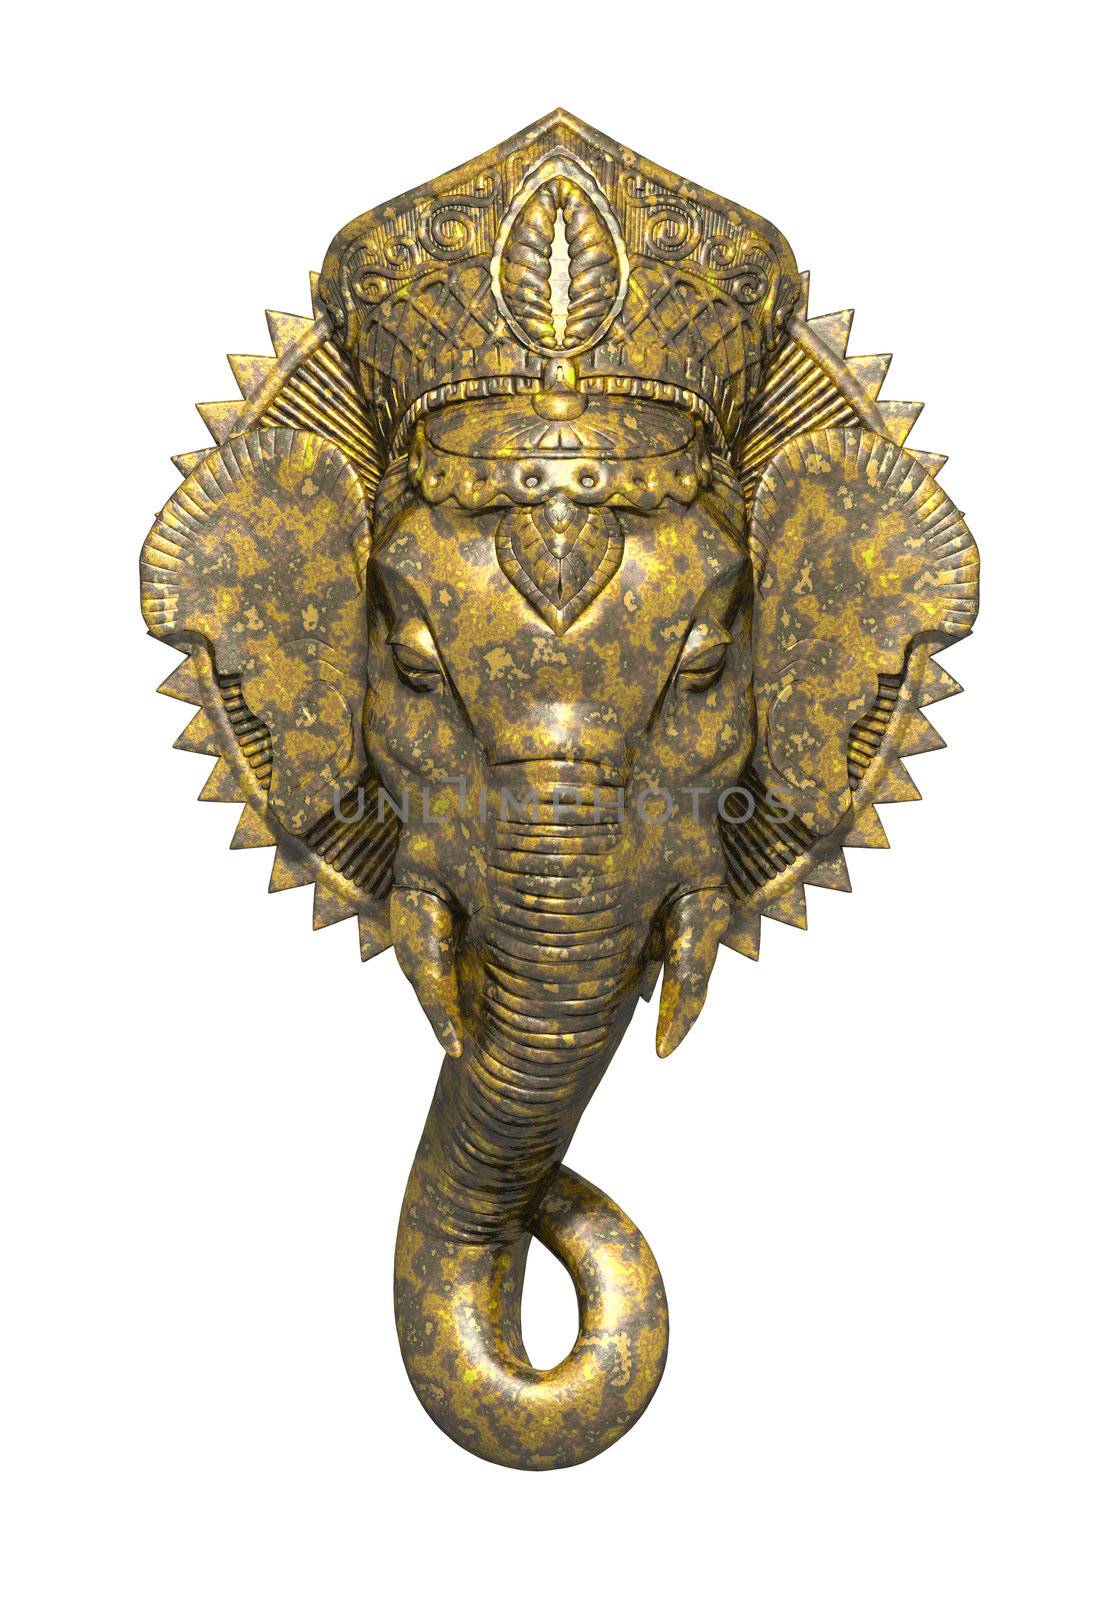 An image of a beautiful golden ganesh sculpture